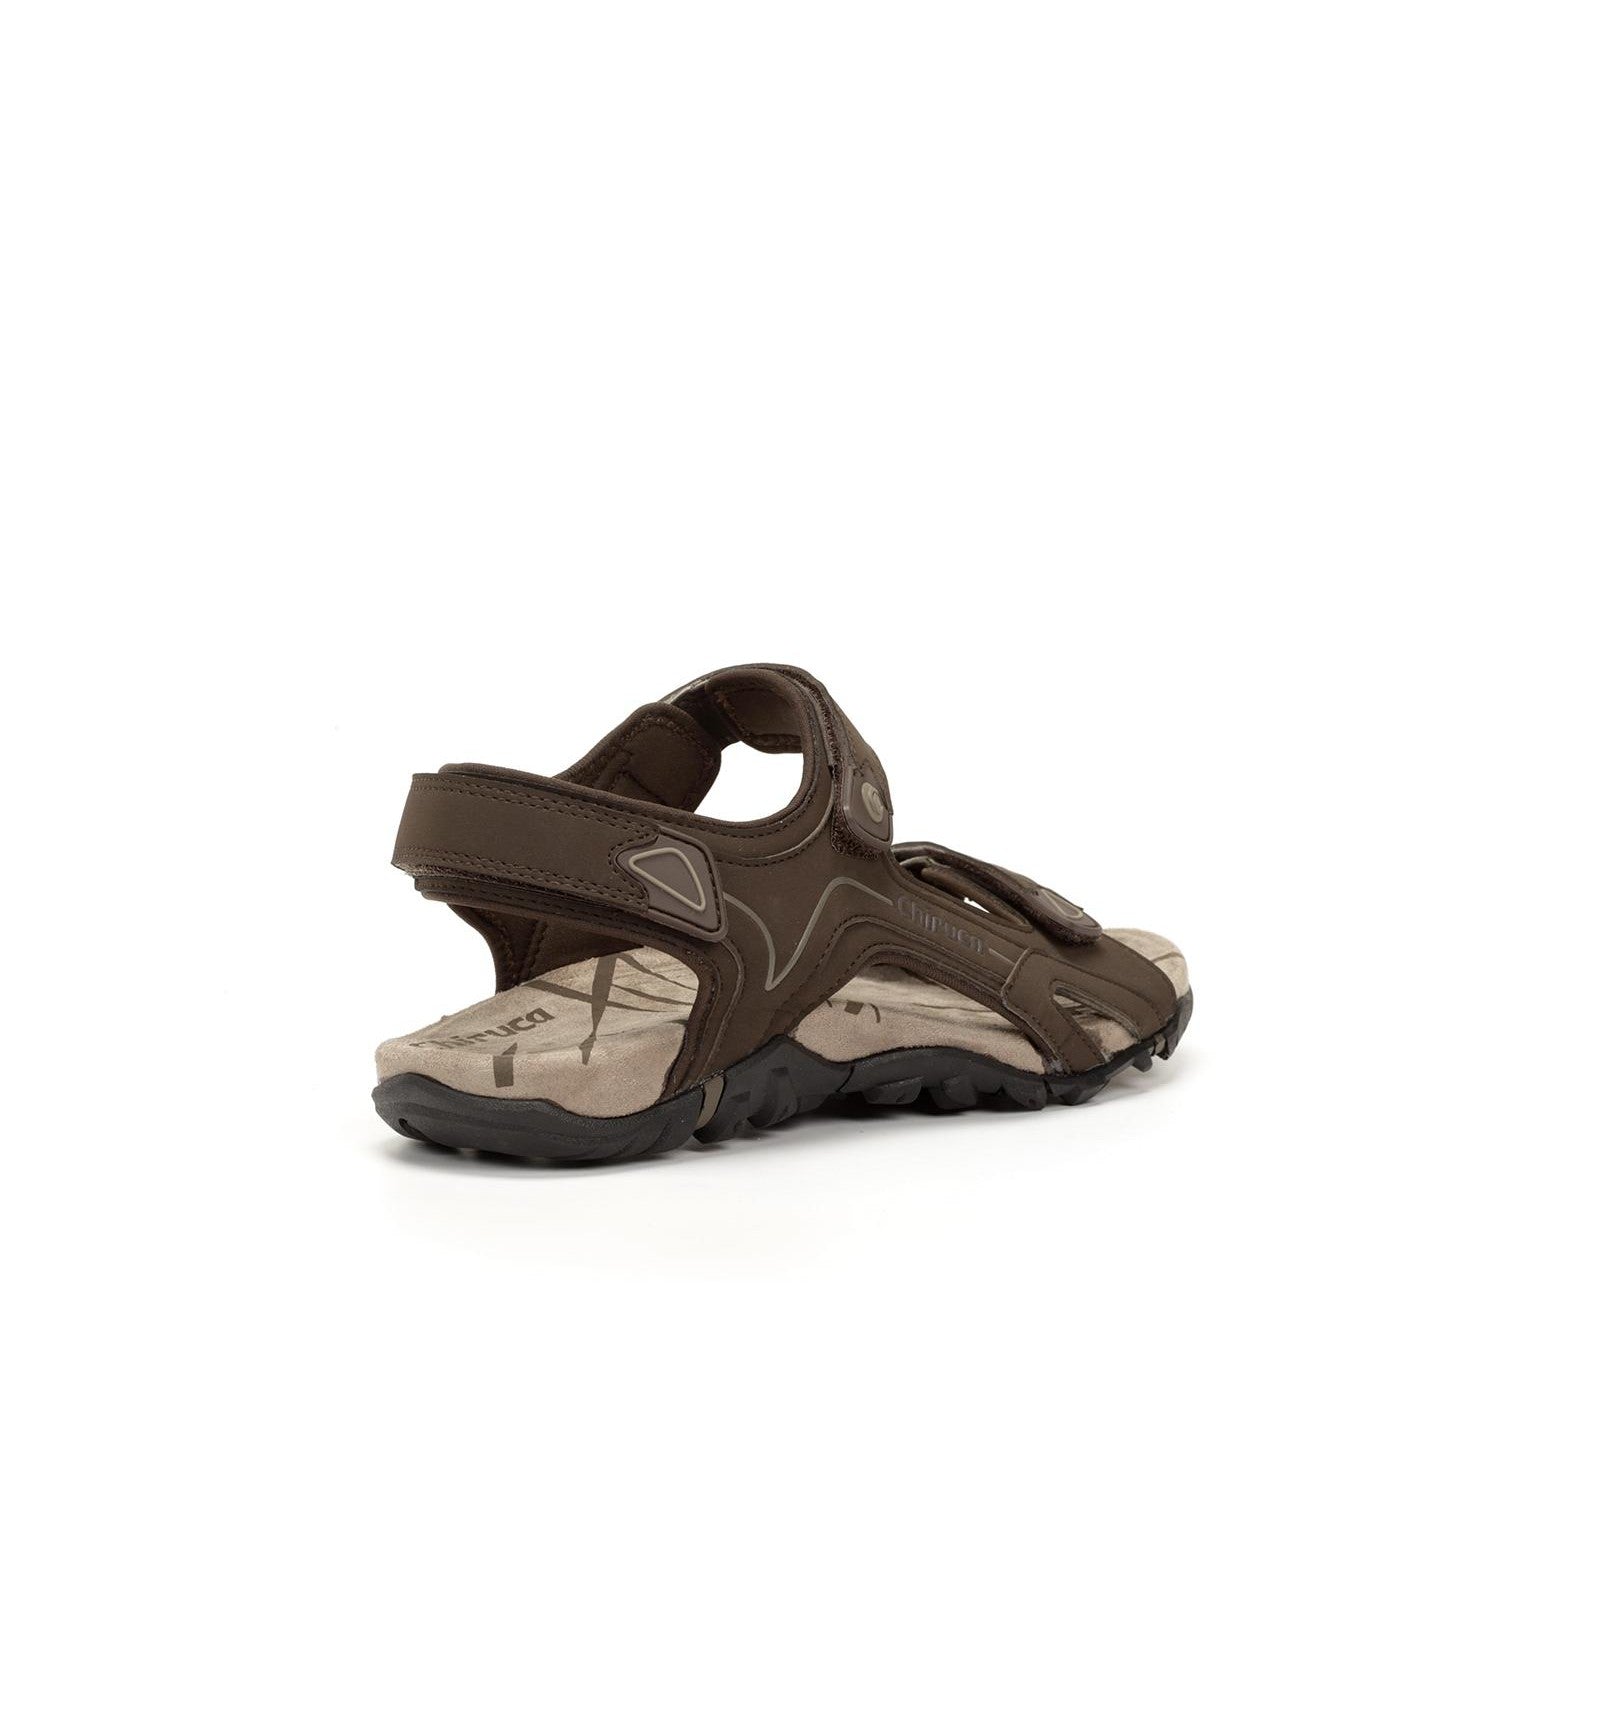 Tucumán sandals